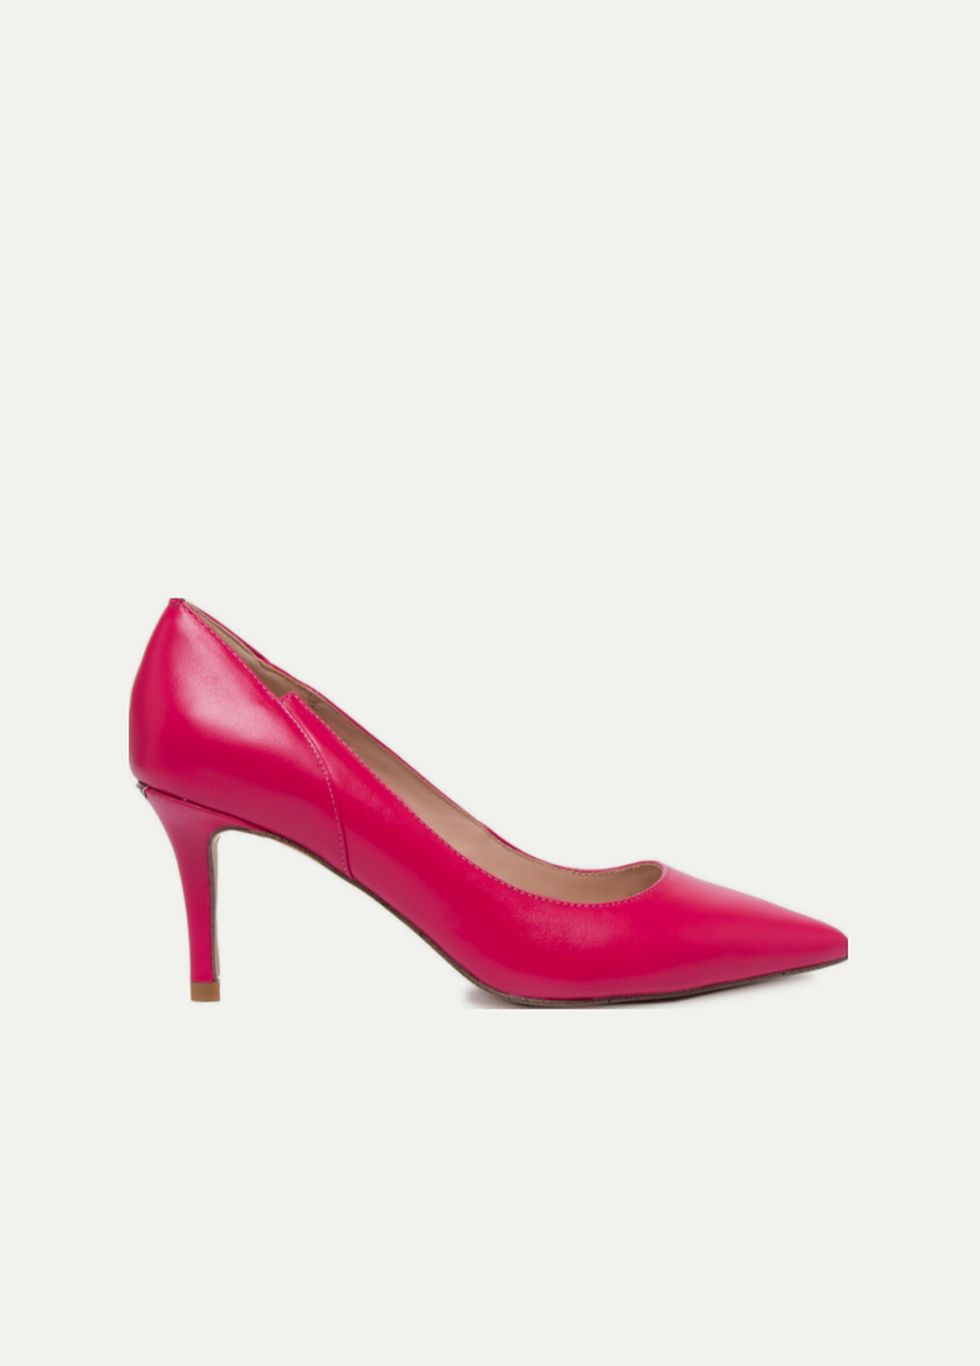 Footwear, High heels, Magenta, Pink, Violet, Shoe, Court shoe, Basic pump, Leather, 